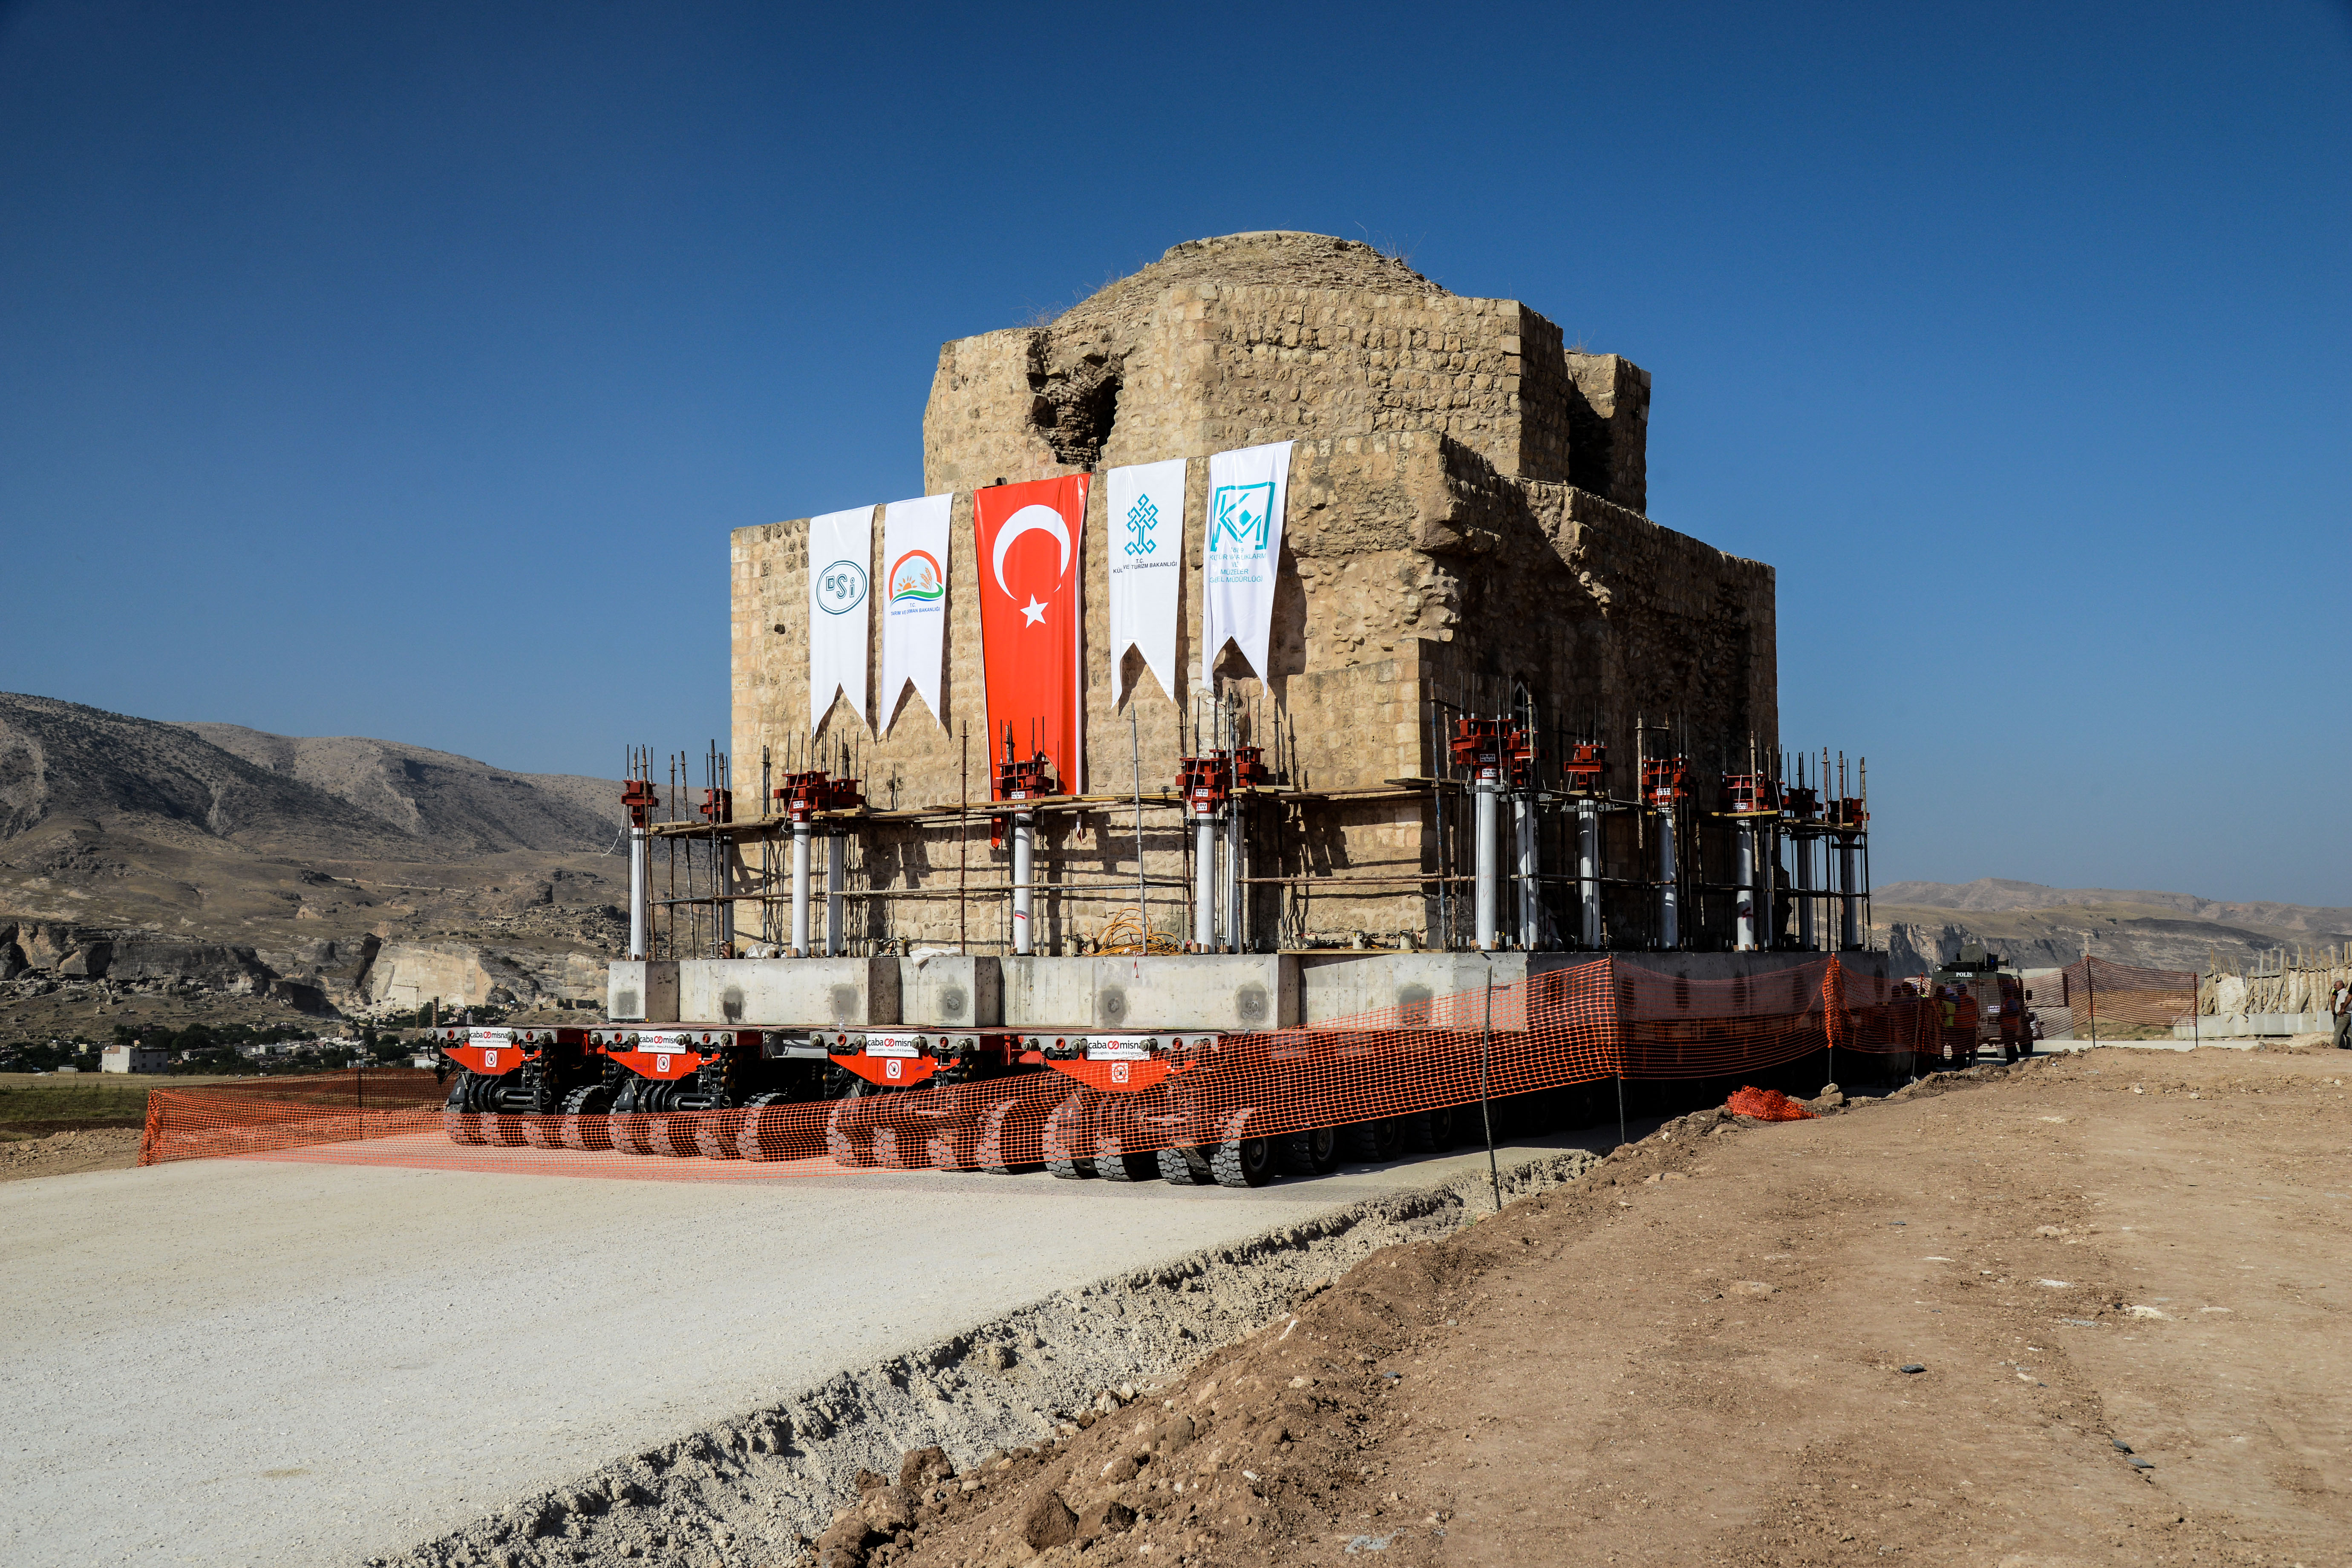 Gigantikus gát miatt költöztetik arrébb egy 12 ezer éves város épületeit Törökországban